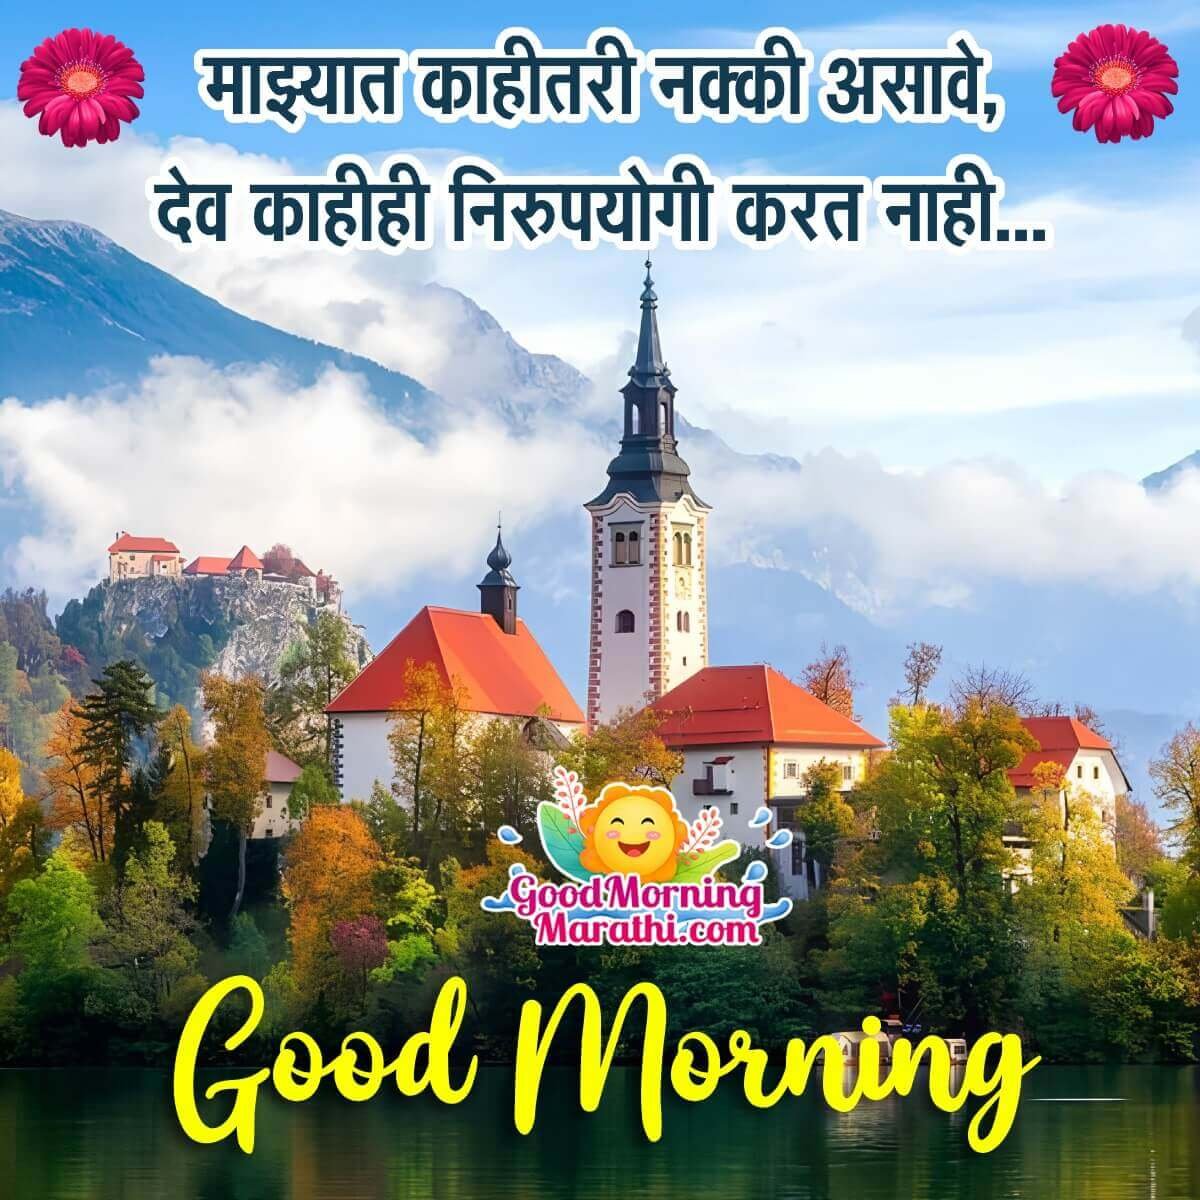 Good Morning Marathi Thoughts Images